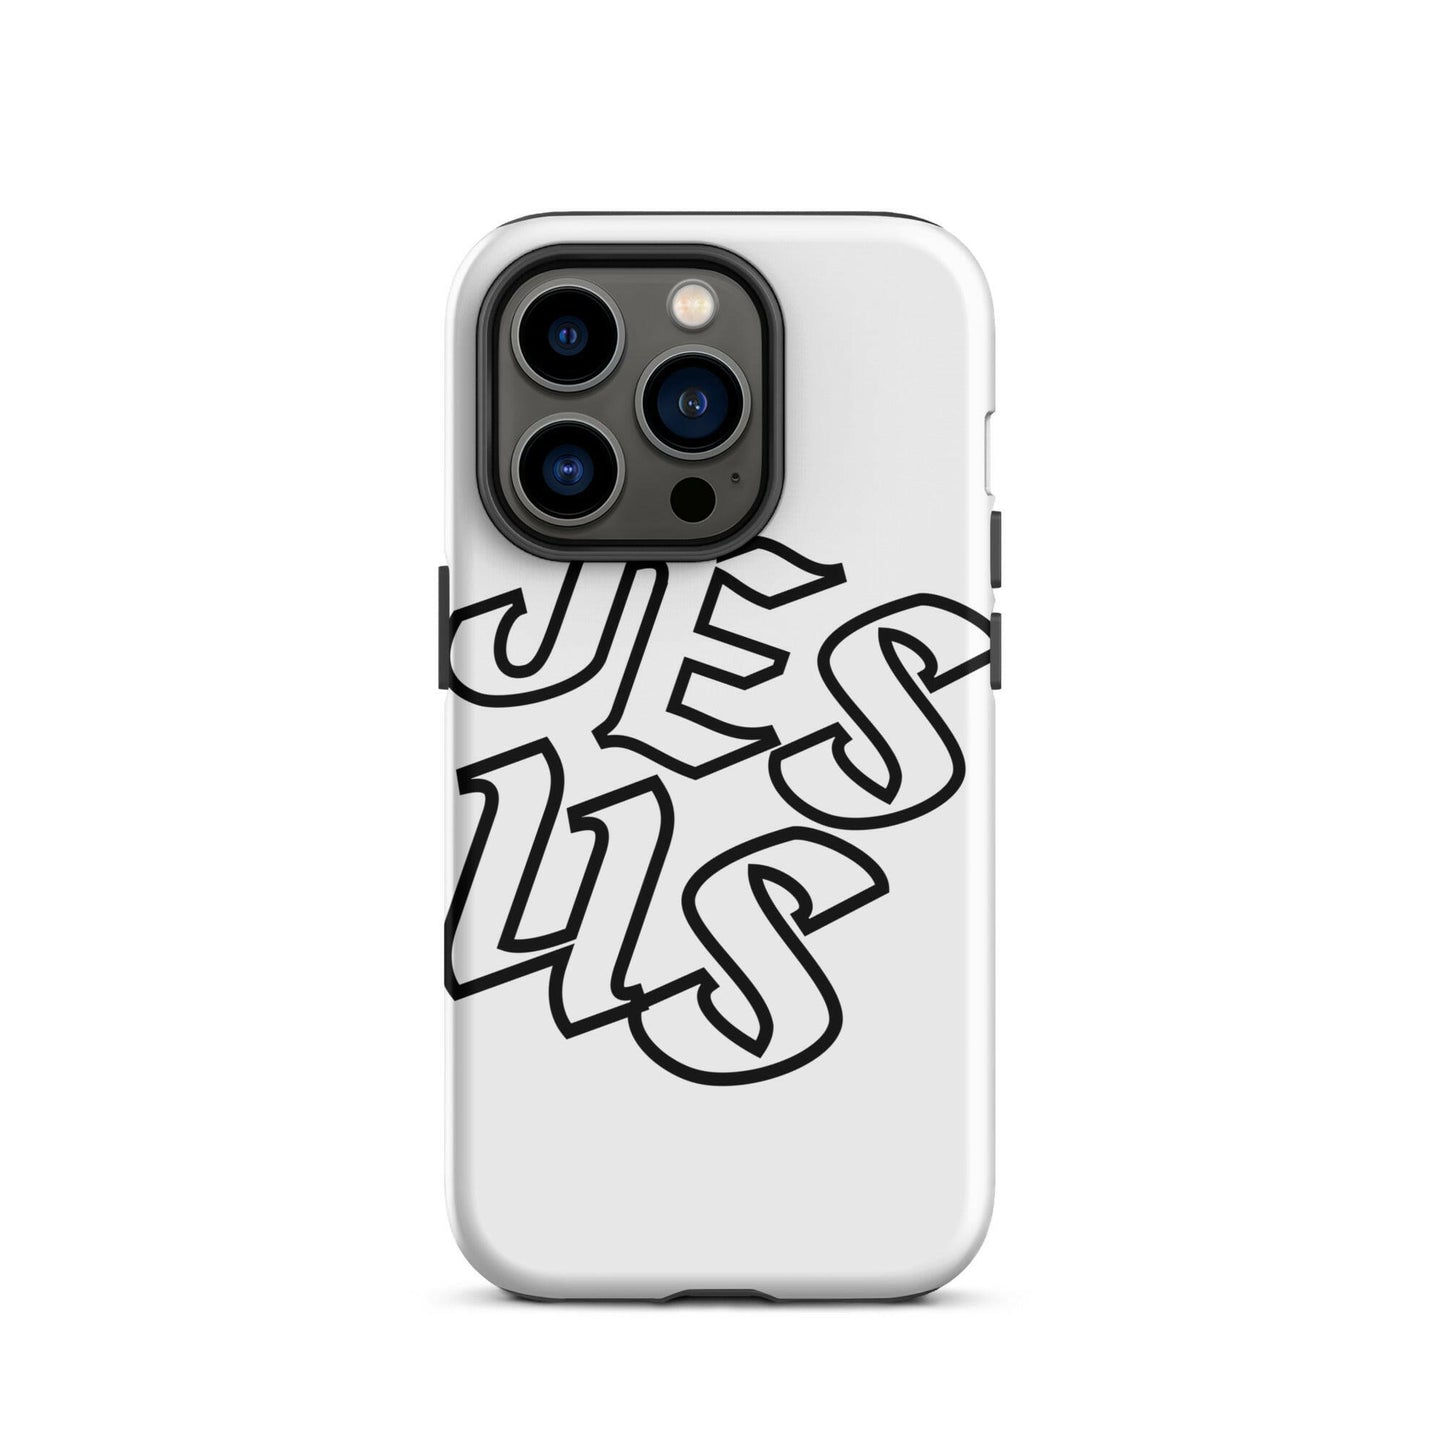 JES-US - (Jesus) Tough Case for iPhone®